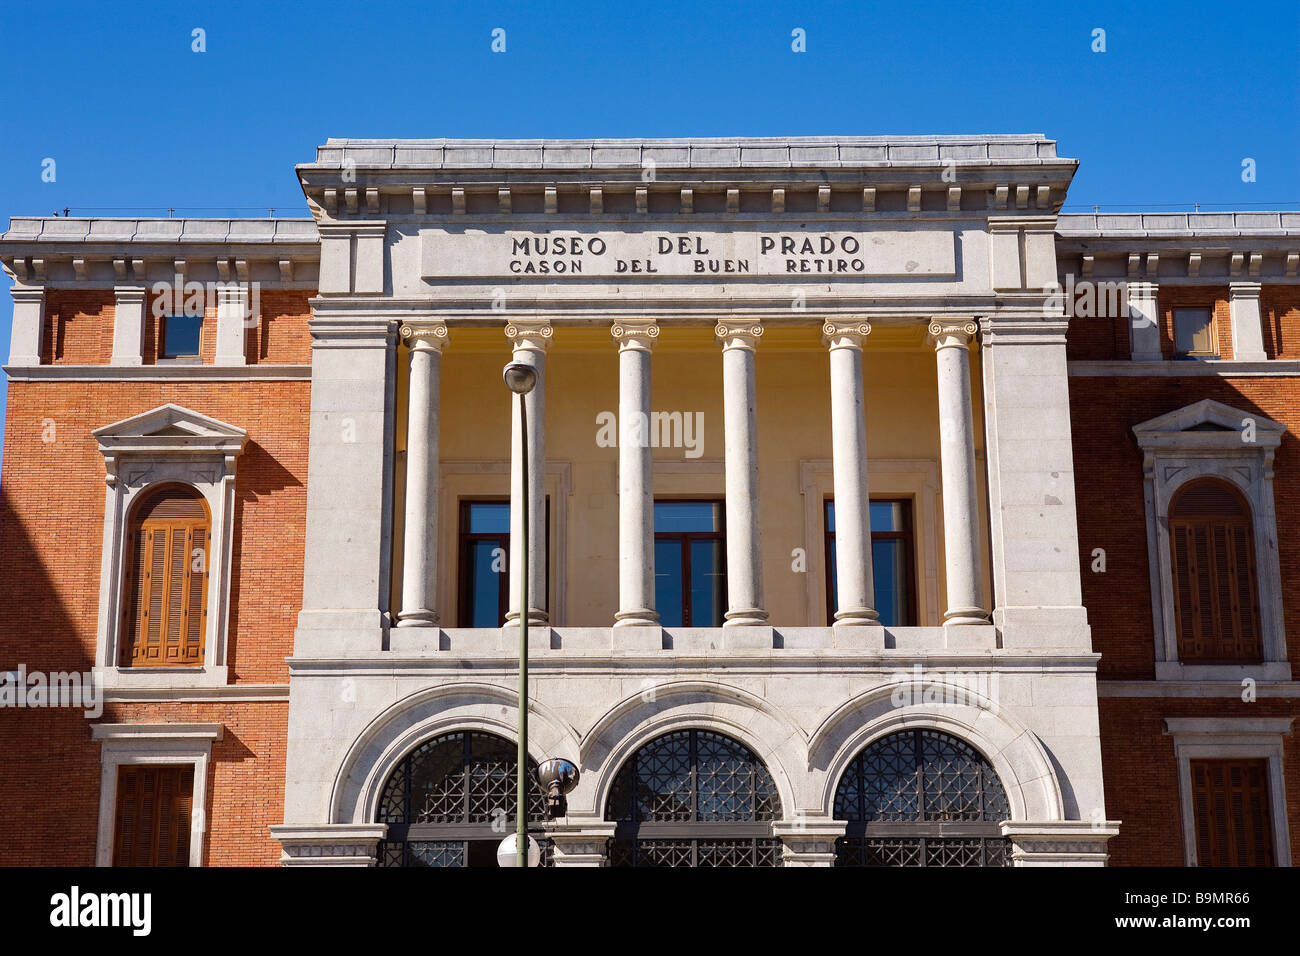 Spain, Madrid, Prado Museum, annexe to the main building Stock Photo